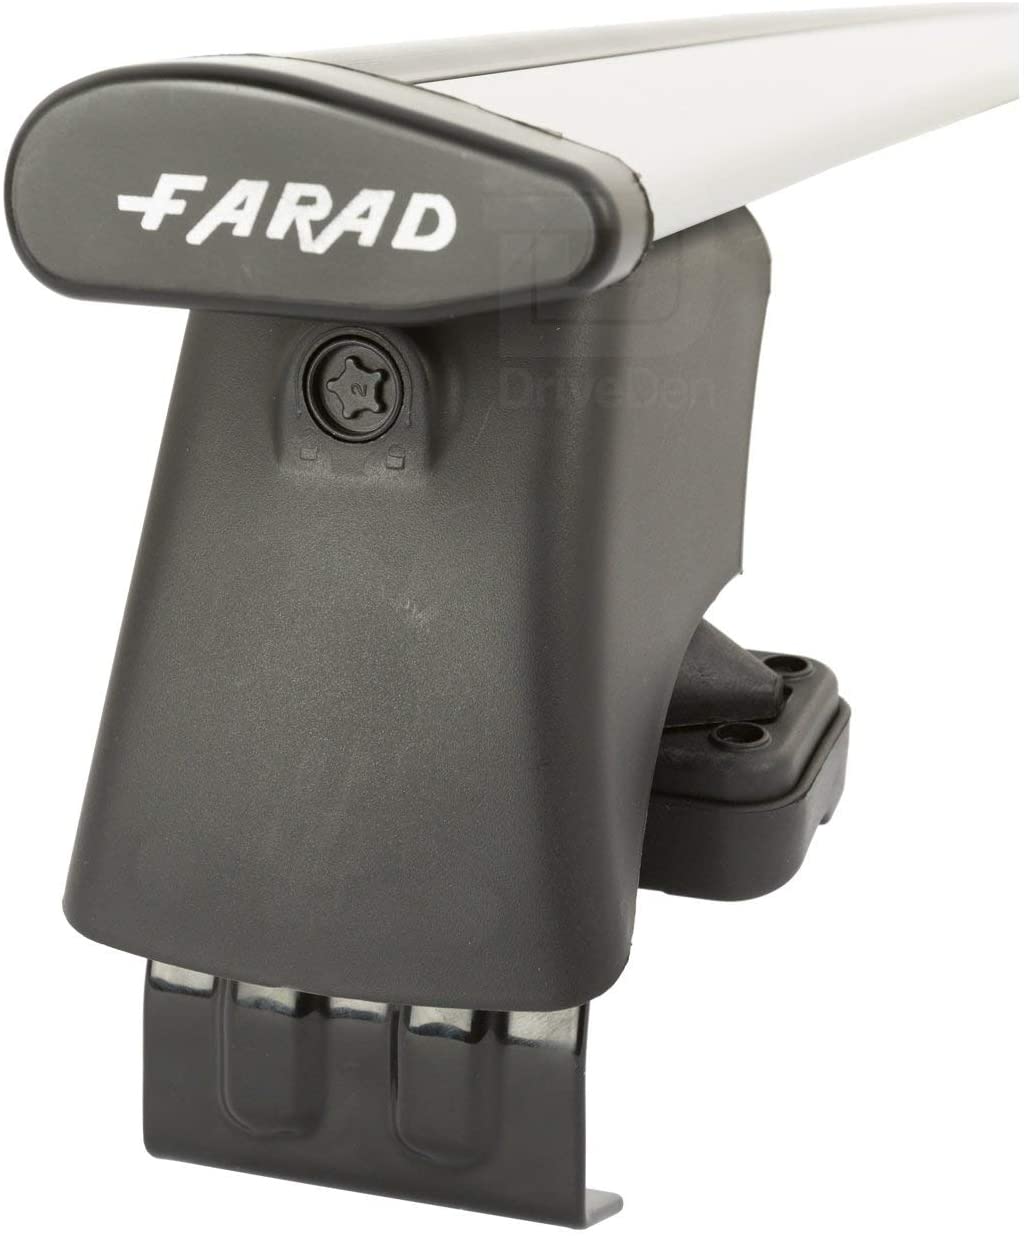 FARAD-Kit H2 per barre portatutto - Hyundai I 10 2008-2013 (senza corrimano)